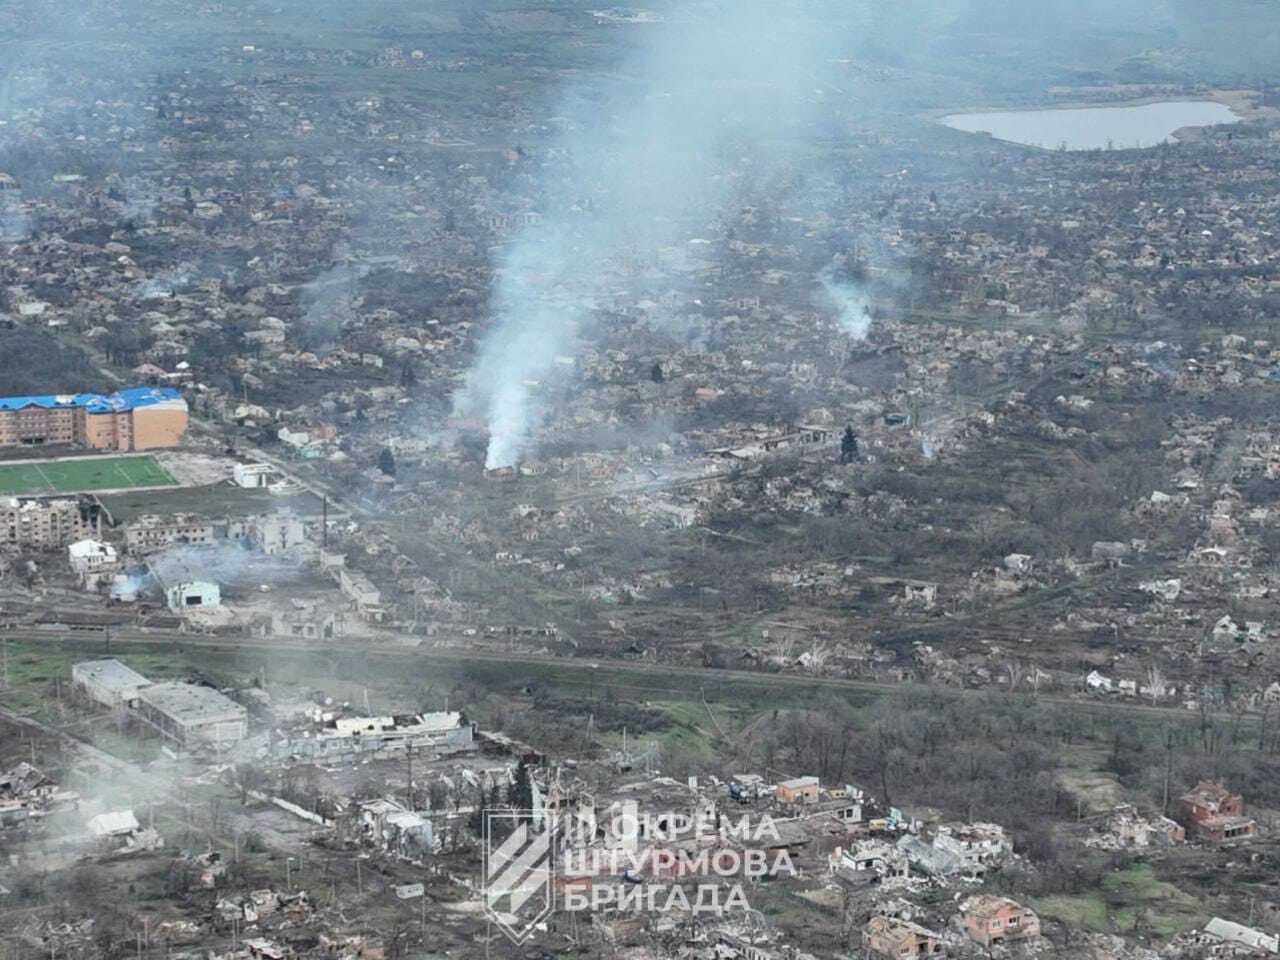 Выжженная земля и разрушенные дома: как выглядит Бахмут с высоты после месяцев ожесточенных боев. Фото